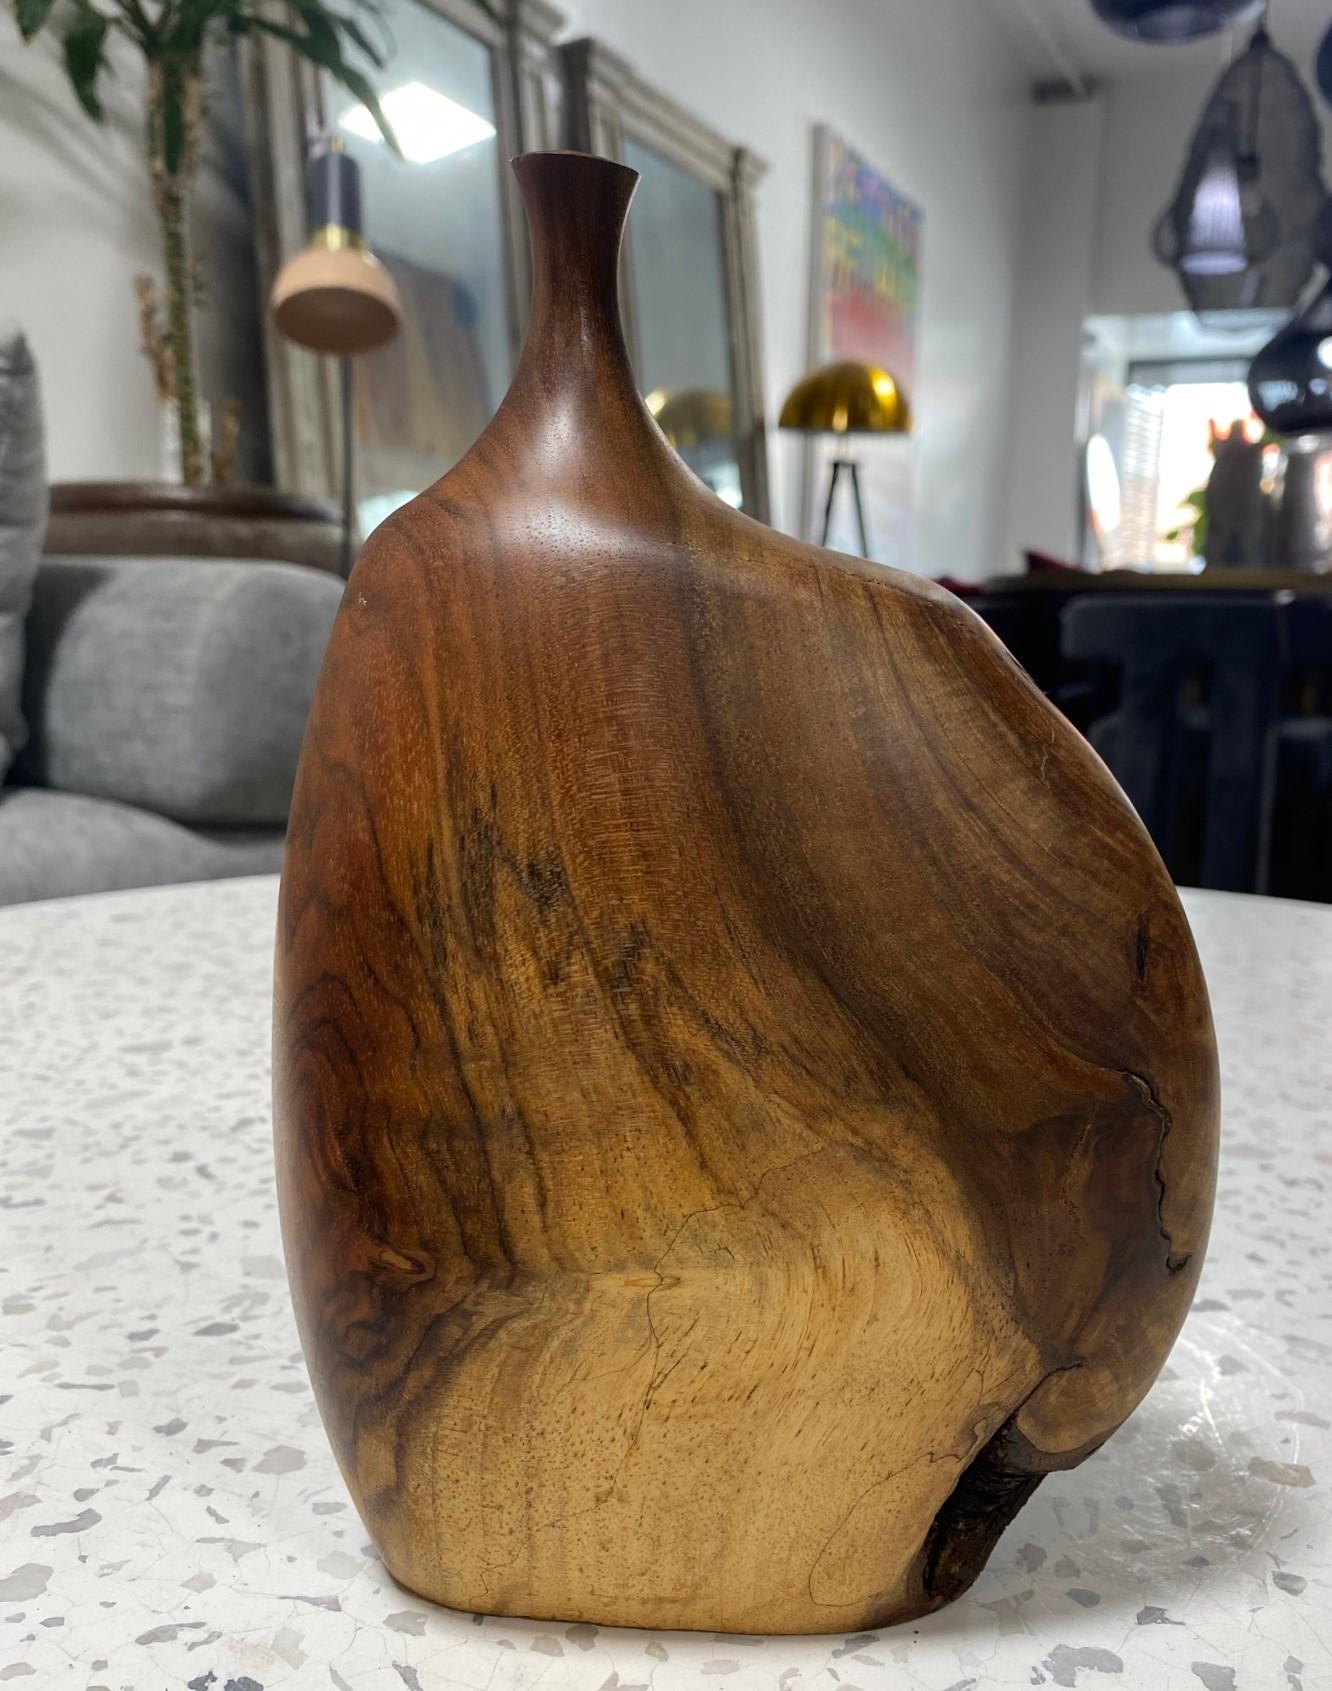 Un très beau vase en bois tourné et sculpté par le célèbre artiste/sculpteur américain/californien (Mendocino, CA) Doug Ayers. Le grain organique du bois et les couleurs changeantes sont tout à fait spectaculaires dans cette pièce, tout comme les